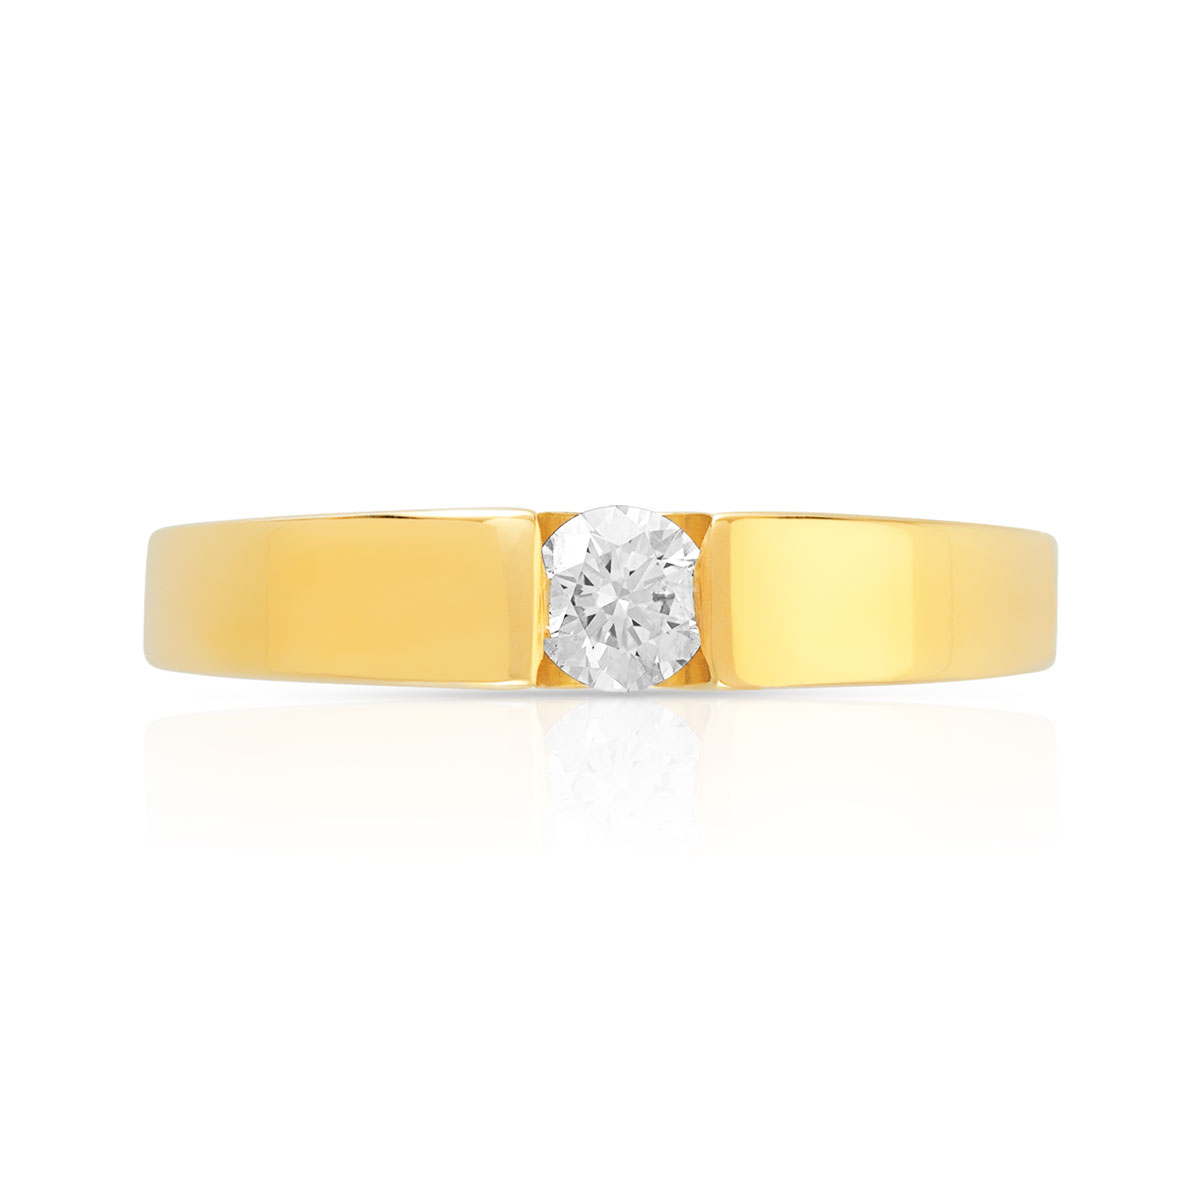 Bague solitaire or 750 jaune diamant synthétique 0.20 carat - vue 3